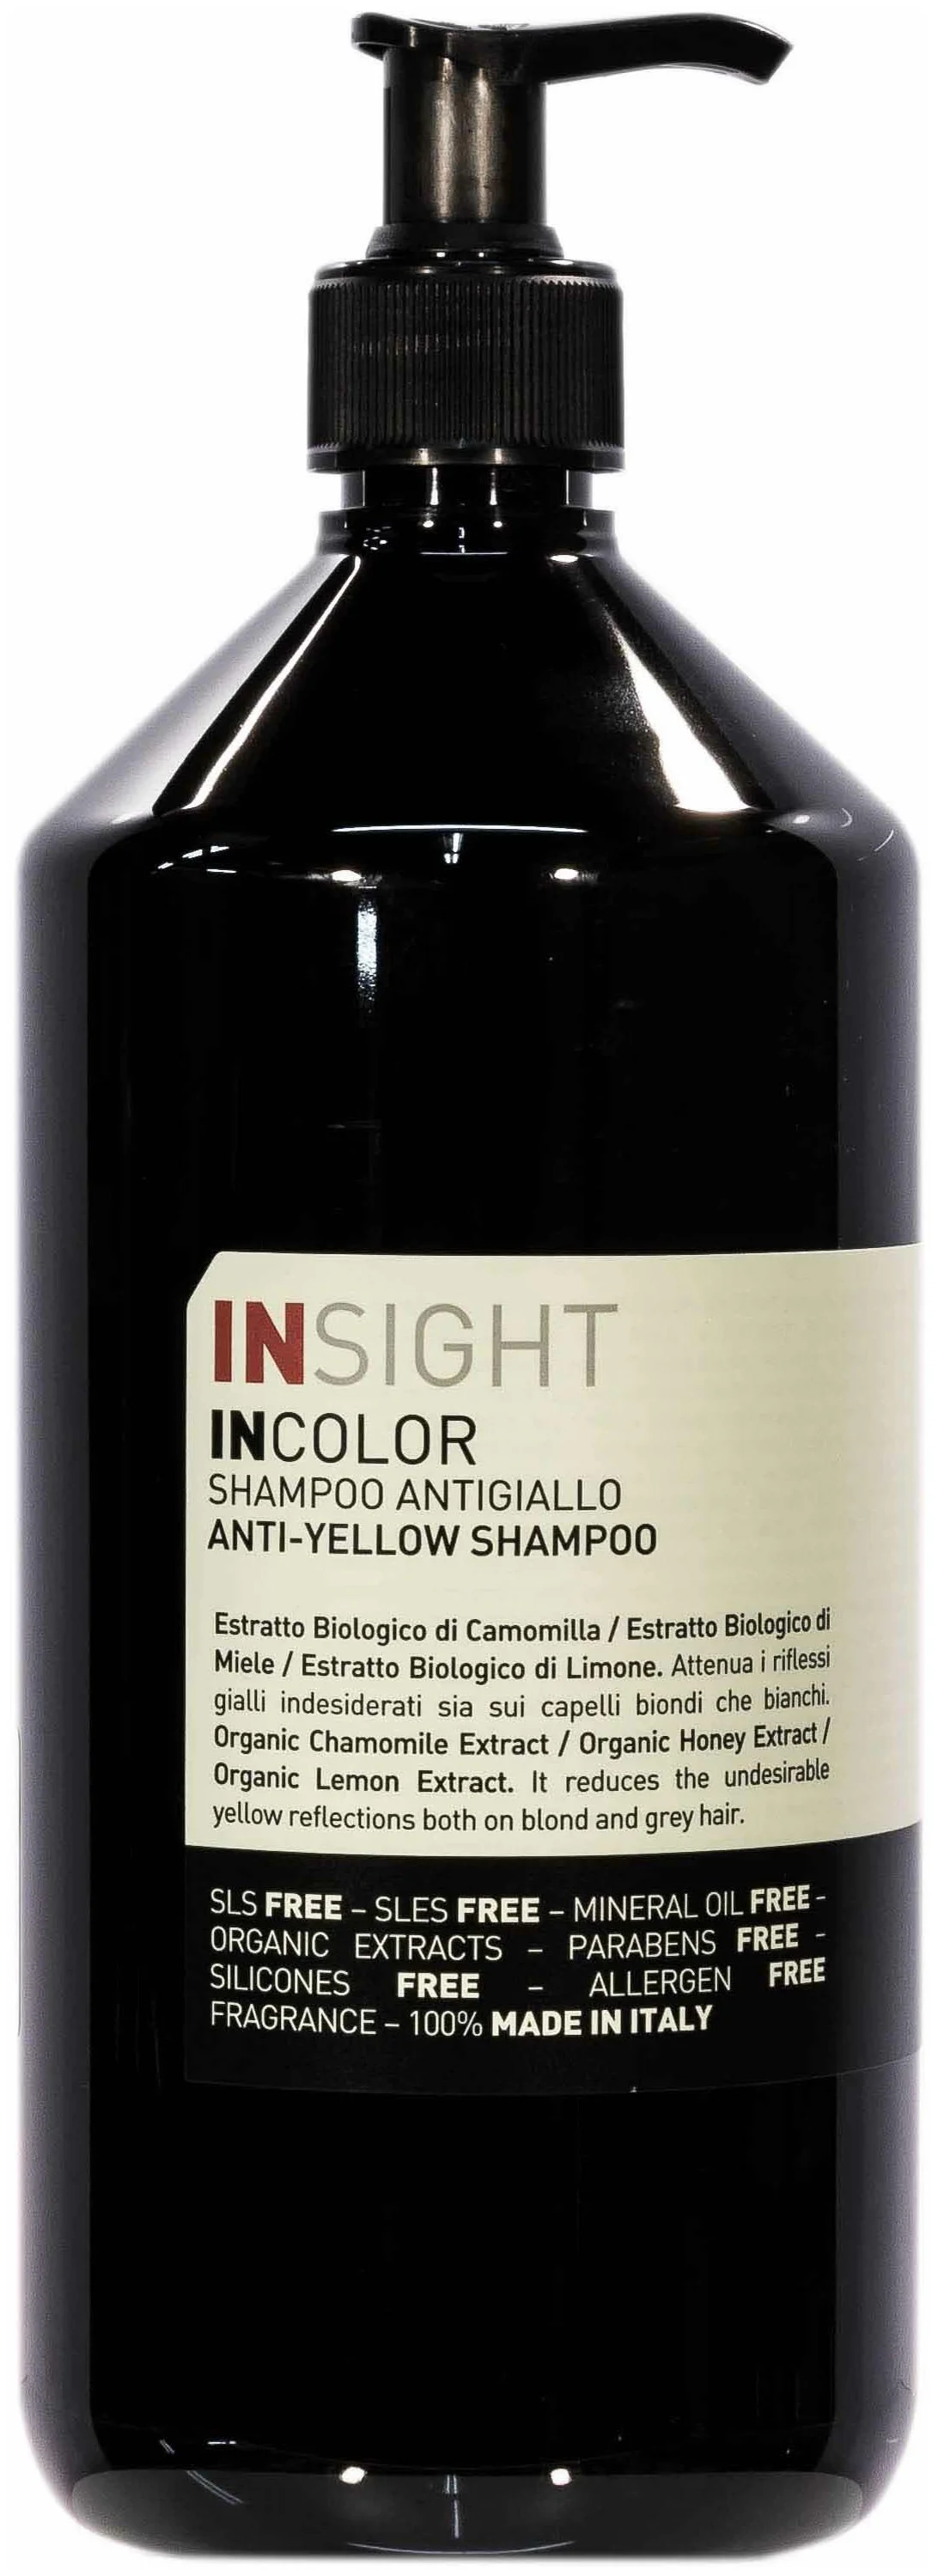 Insight Incolor Anti-Yellow - питание, придание блеска, разглаживание, очищение, восстановление цвета, увлажнение, устранение желтизны, придание мягкости